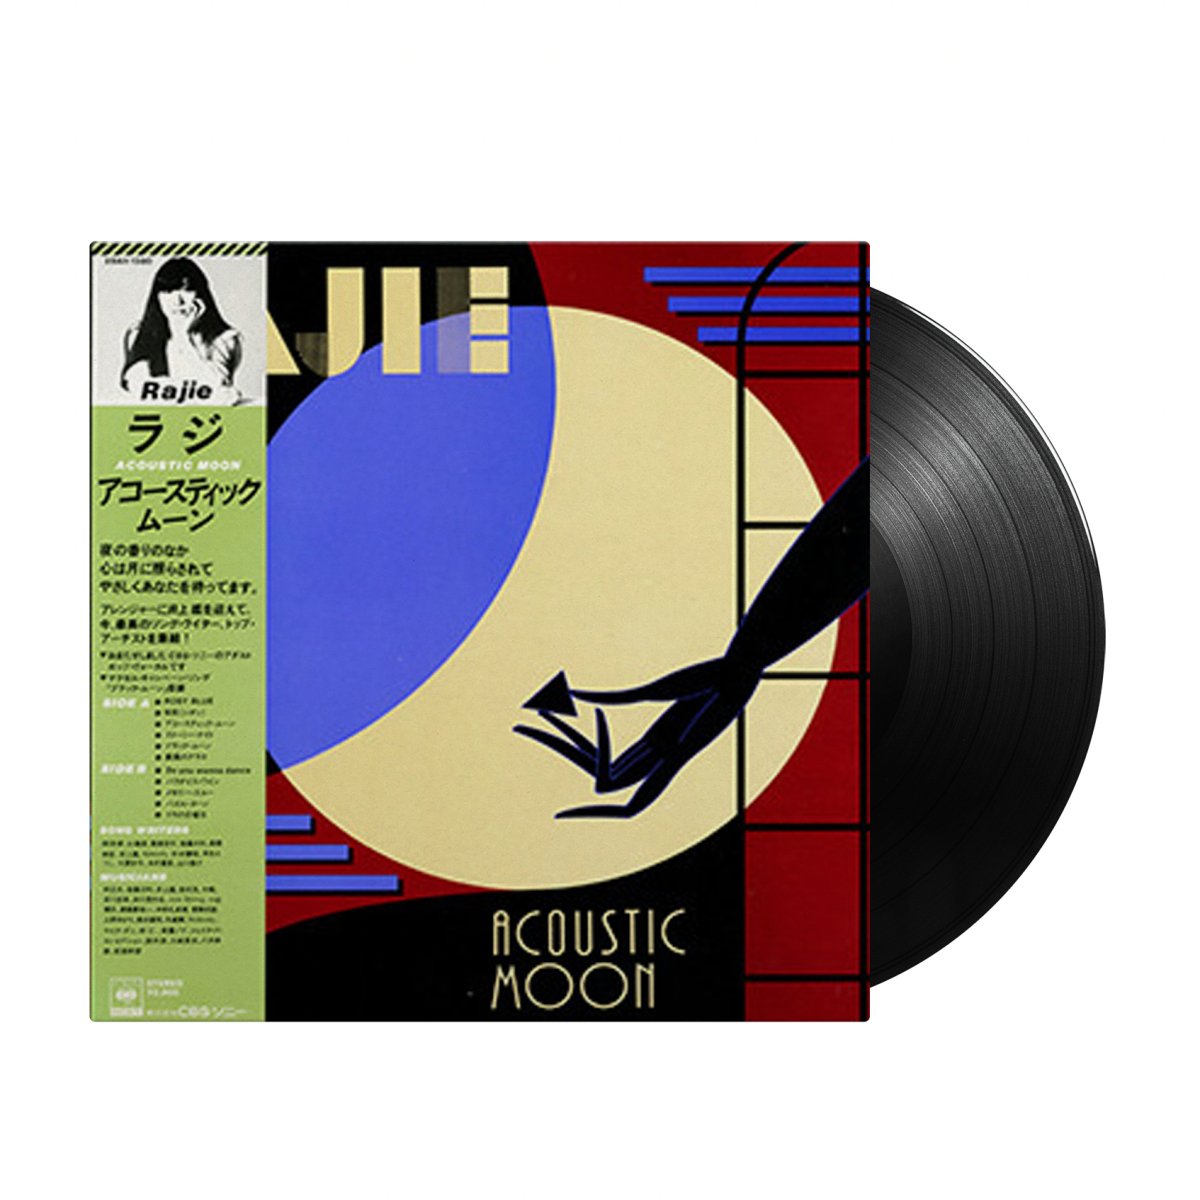 Rajie - Acoustic Moon (Japan Import) - Inner Ocean Records